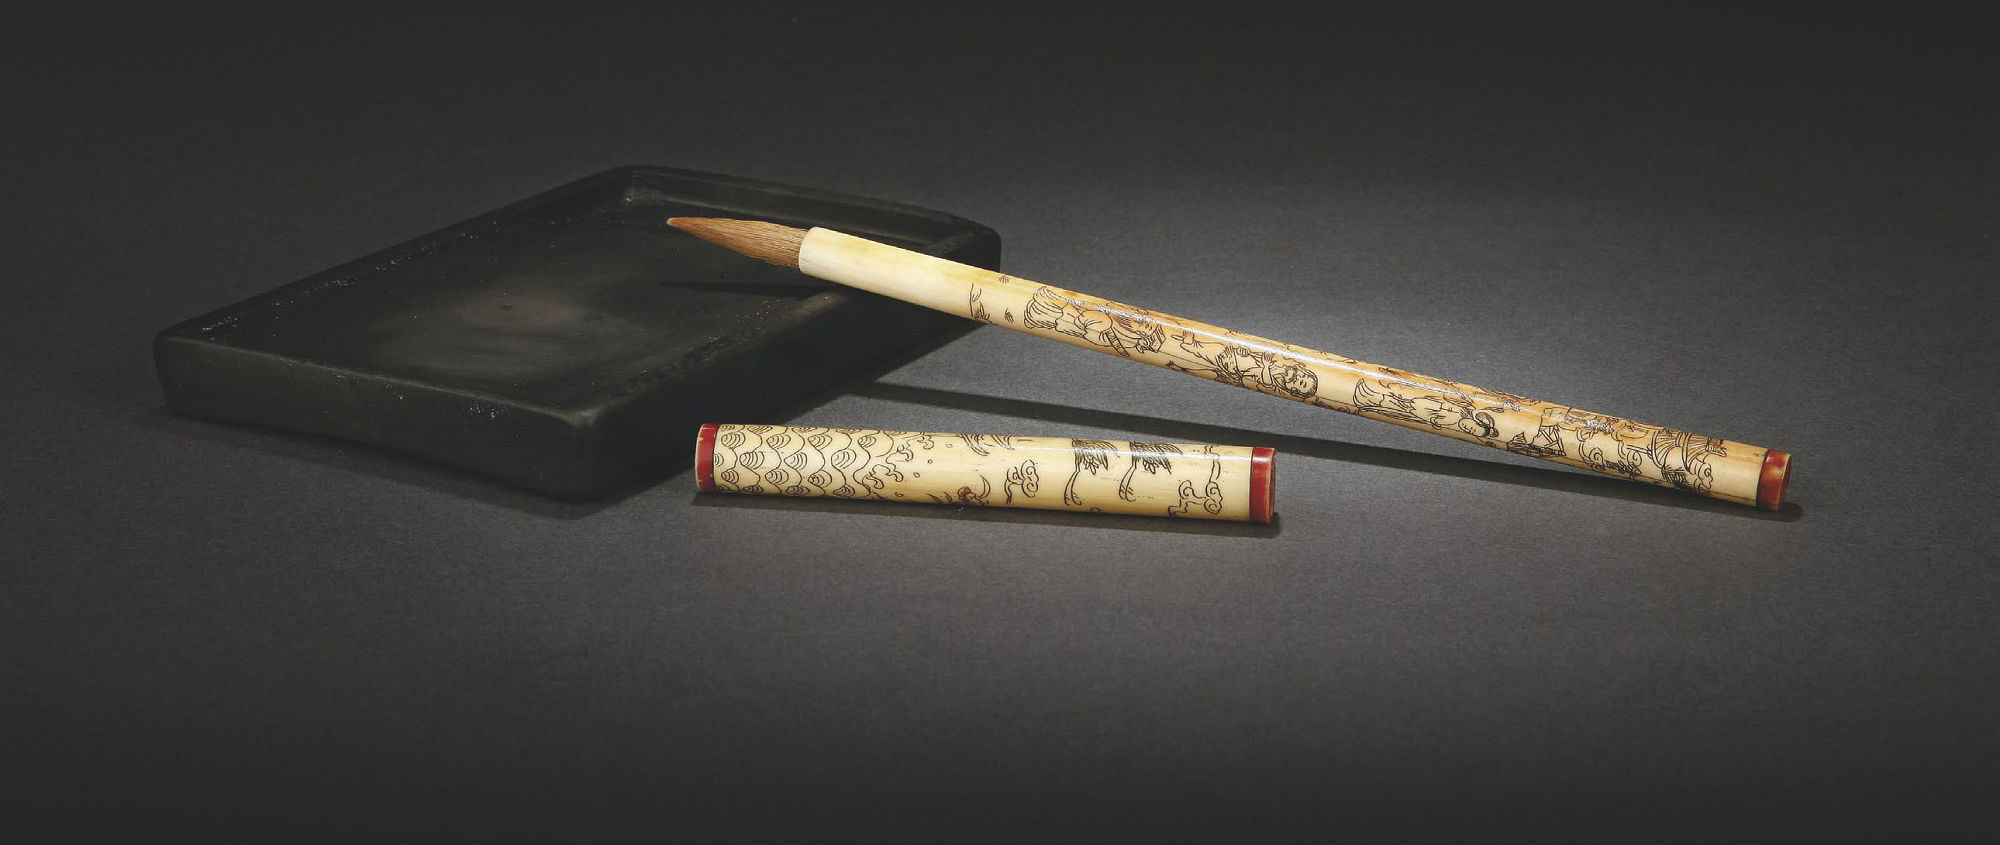 毛笔是古代常用的书写工具,也是中华文明的标志之一.